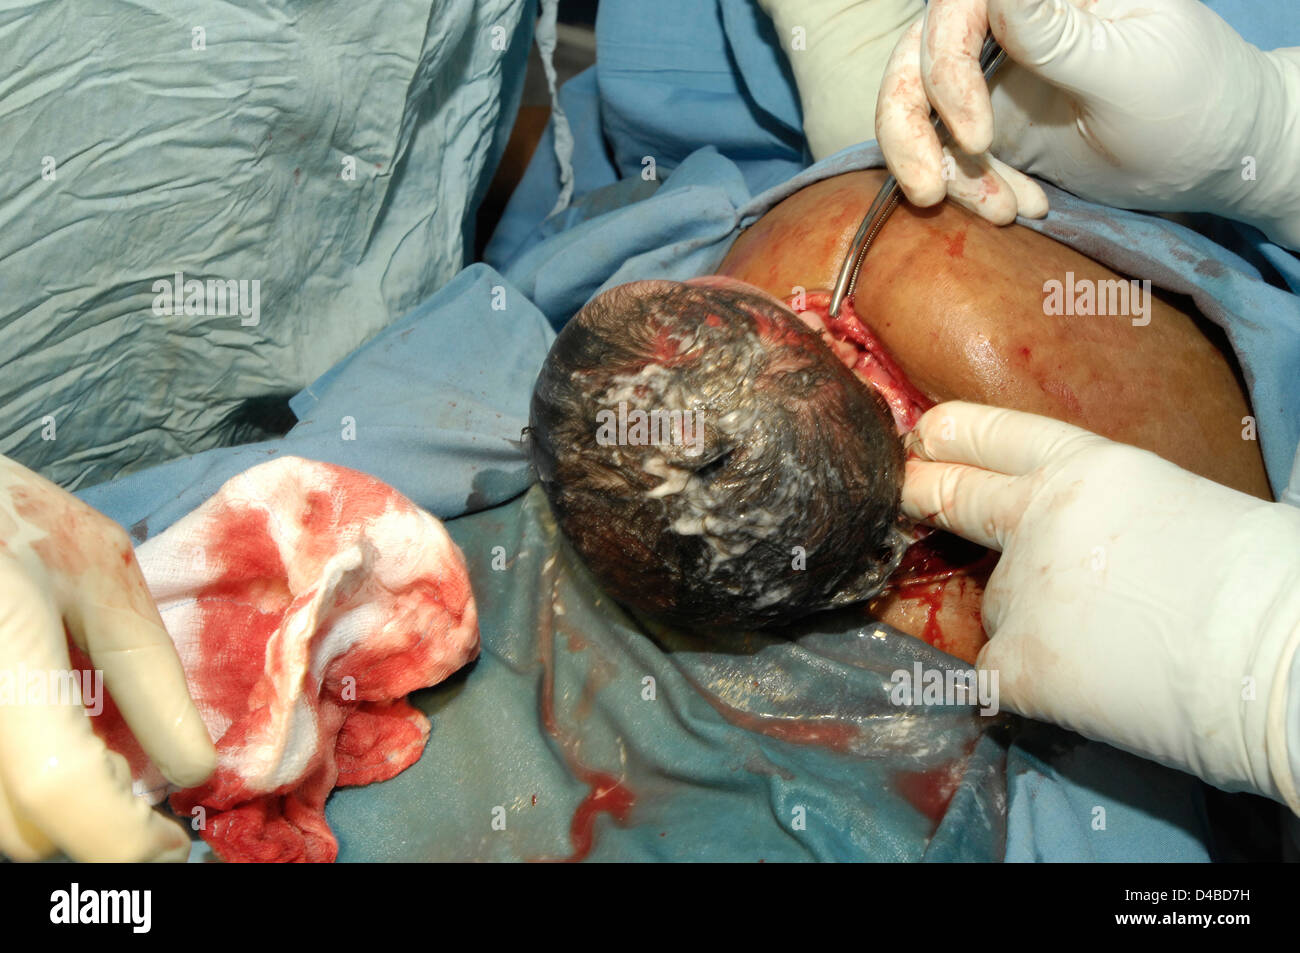 La livraison césarienne. La tête de bébé sortant de blessure hors de l'utérus de sa mère Banque D'Images